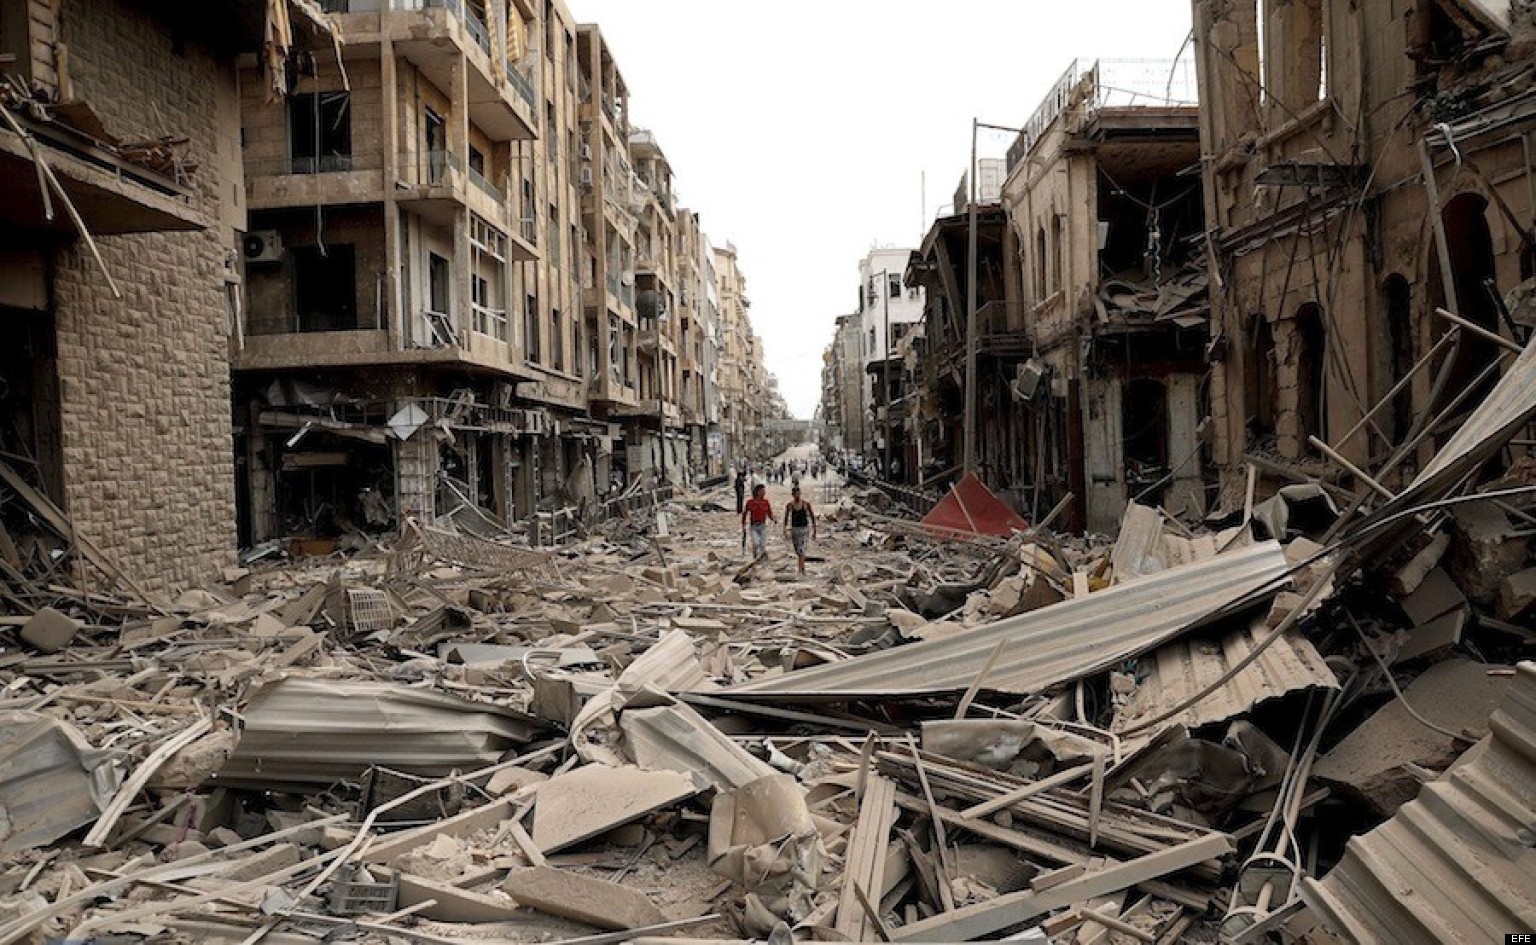 ***SE A—ADEN RESTRICCIONES Y ACTUALIZA N⁄MERO DE VÕCTIMAS***ALE04 ALEPO (SIRIA) 03/10/2012.- FotografÌa facilitada por la agencia de noticias siria SANA de una vista del lugar afectado por la explosiÛn de tres coches bomba en Alepo (Siria) hoy, miÈrcoles 3 de octubre de 2012. Al menos 31 personas murieron hoy y decenas resultaron heridas en varias "explosiones terroristas" en Alepo (norte), la segunda ciudad de Siria, dijeron a Efe fuentes oficiales, que destacaron que hubo grandes daÒos materiales. EFE/SANA SOLO USO EDITORIAL PROHIBIDA SU VENTA